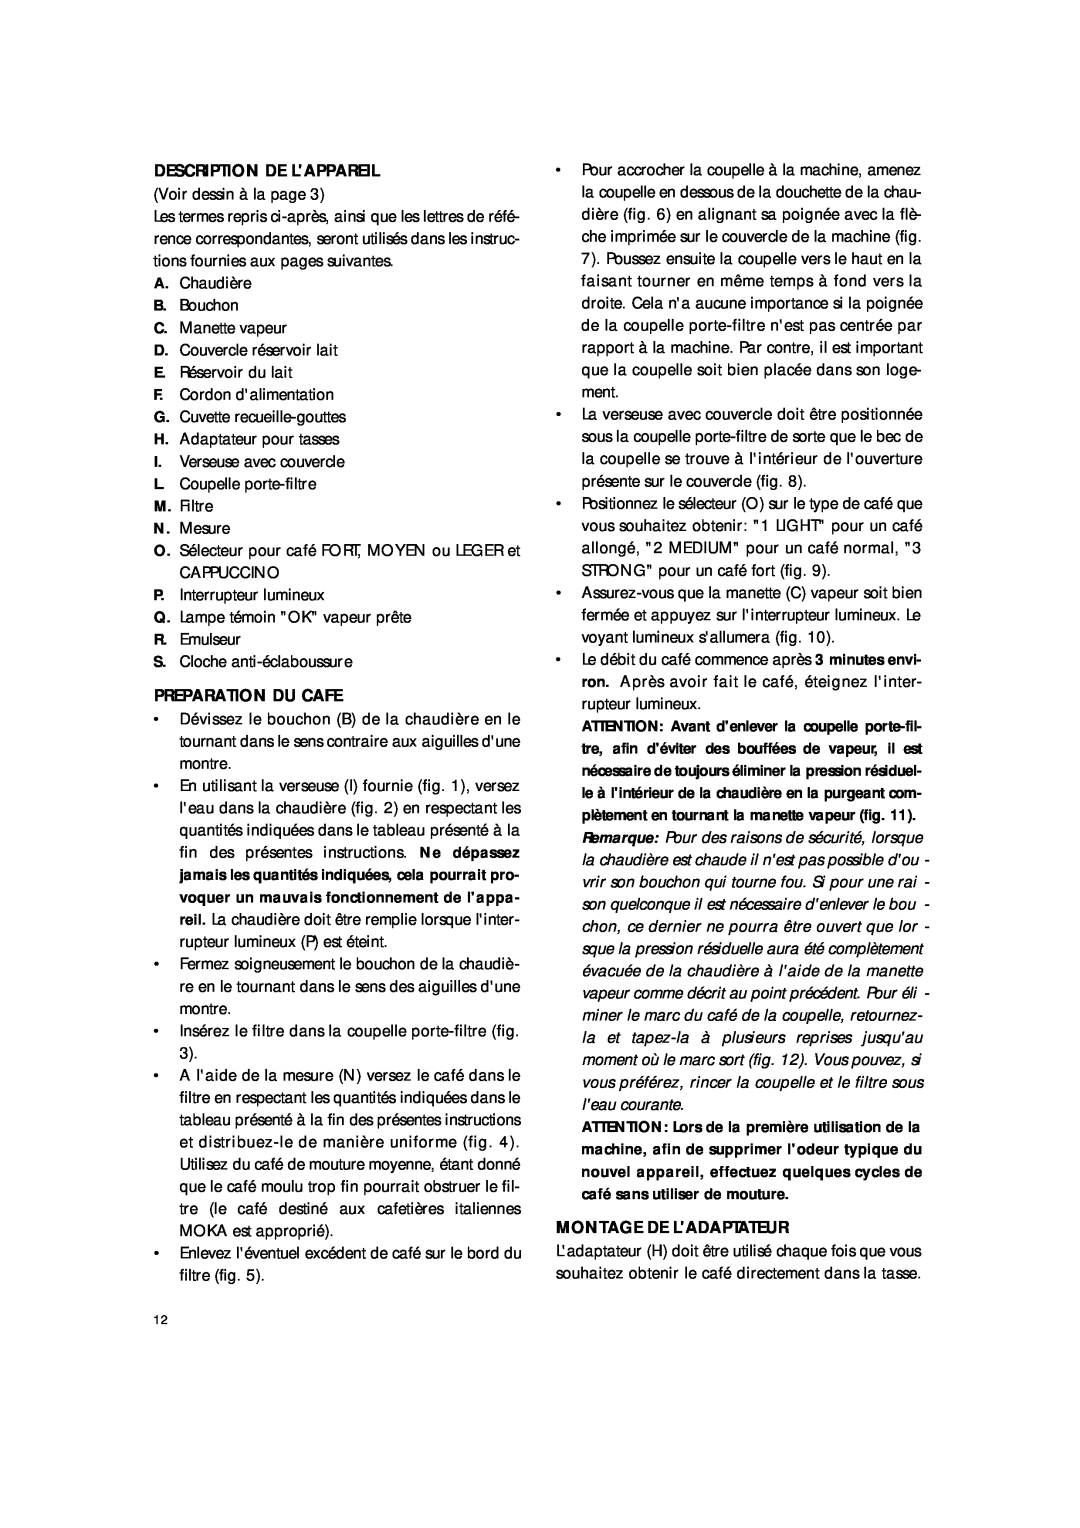 DeLonghi BAR8 manual Description De Lappareil, Preparation Du Cafe, Montage De Ladaptateur 